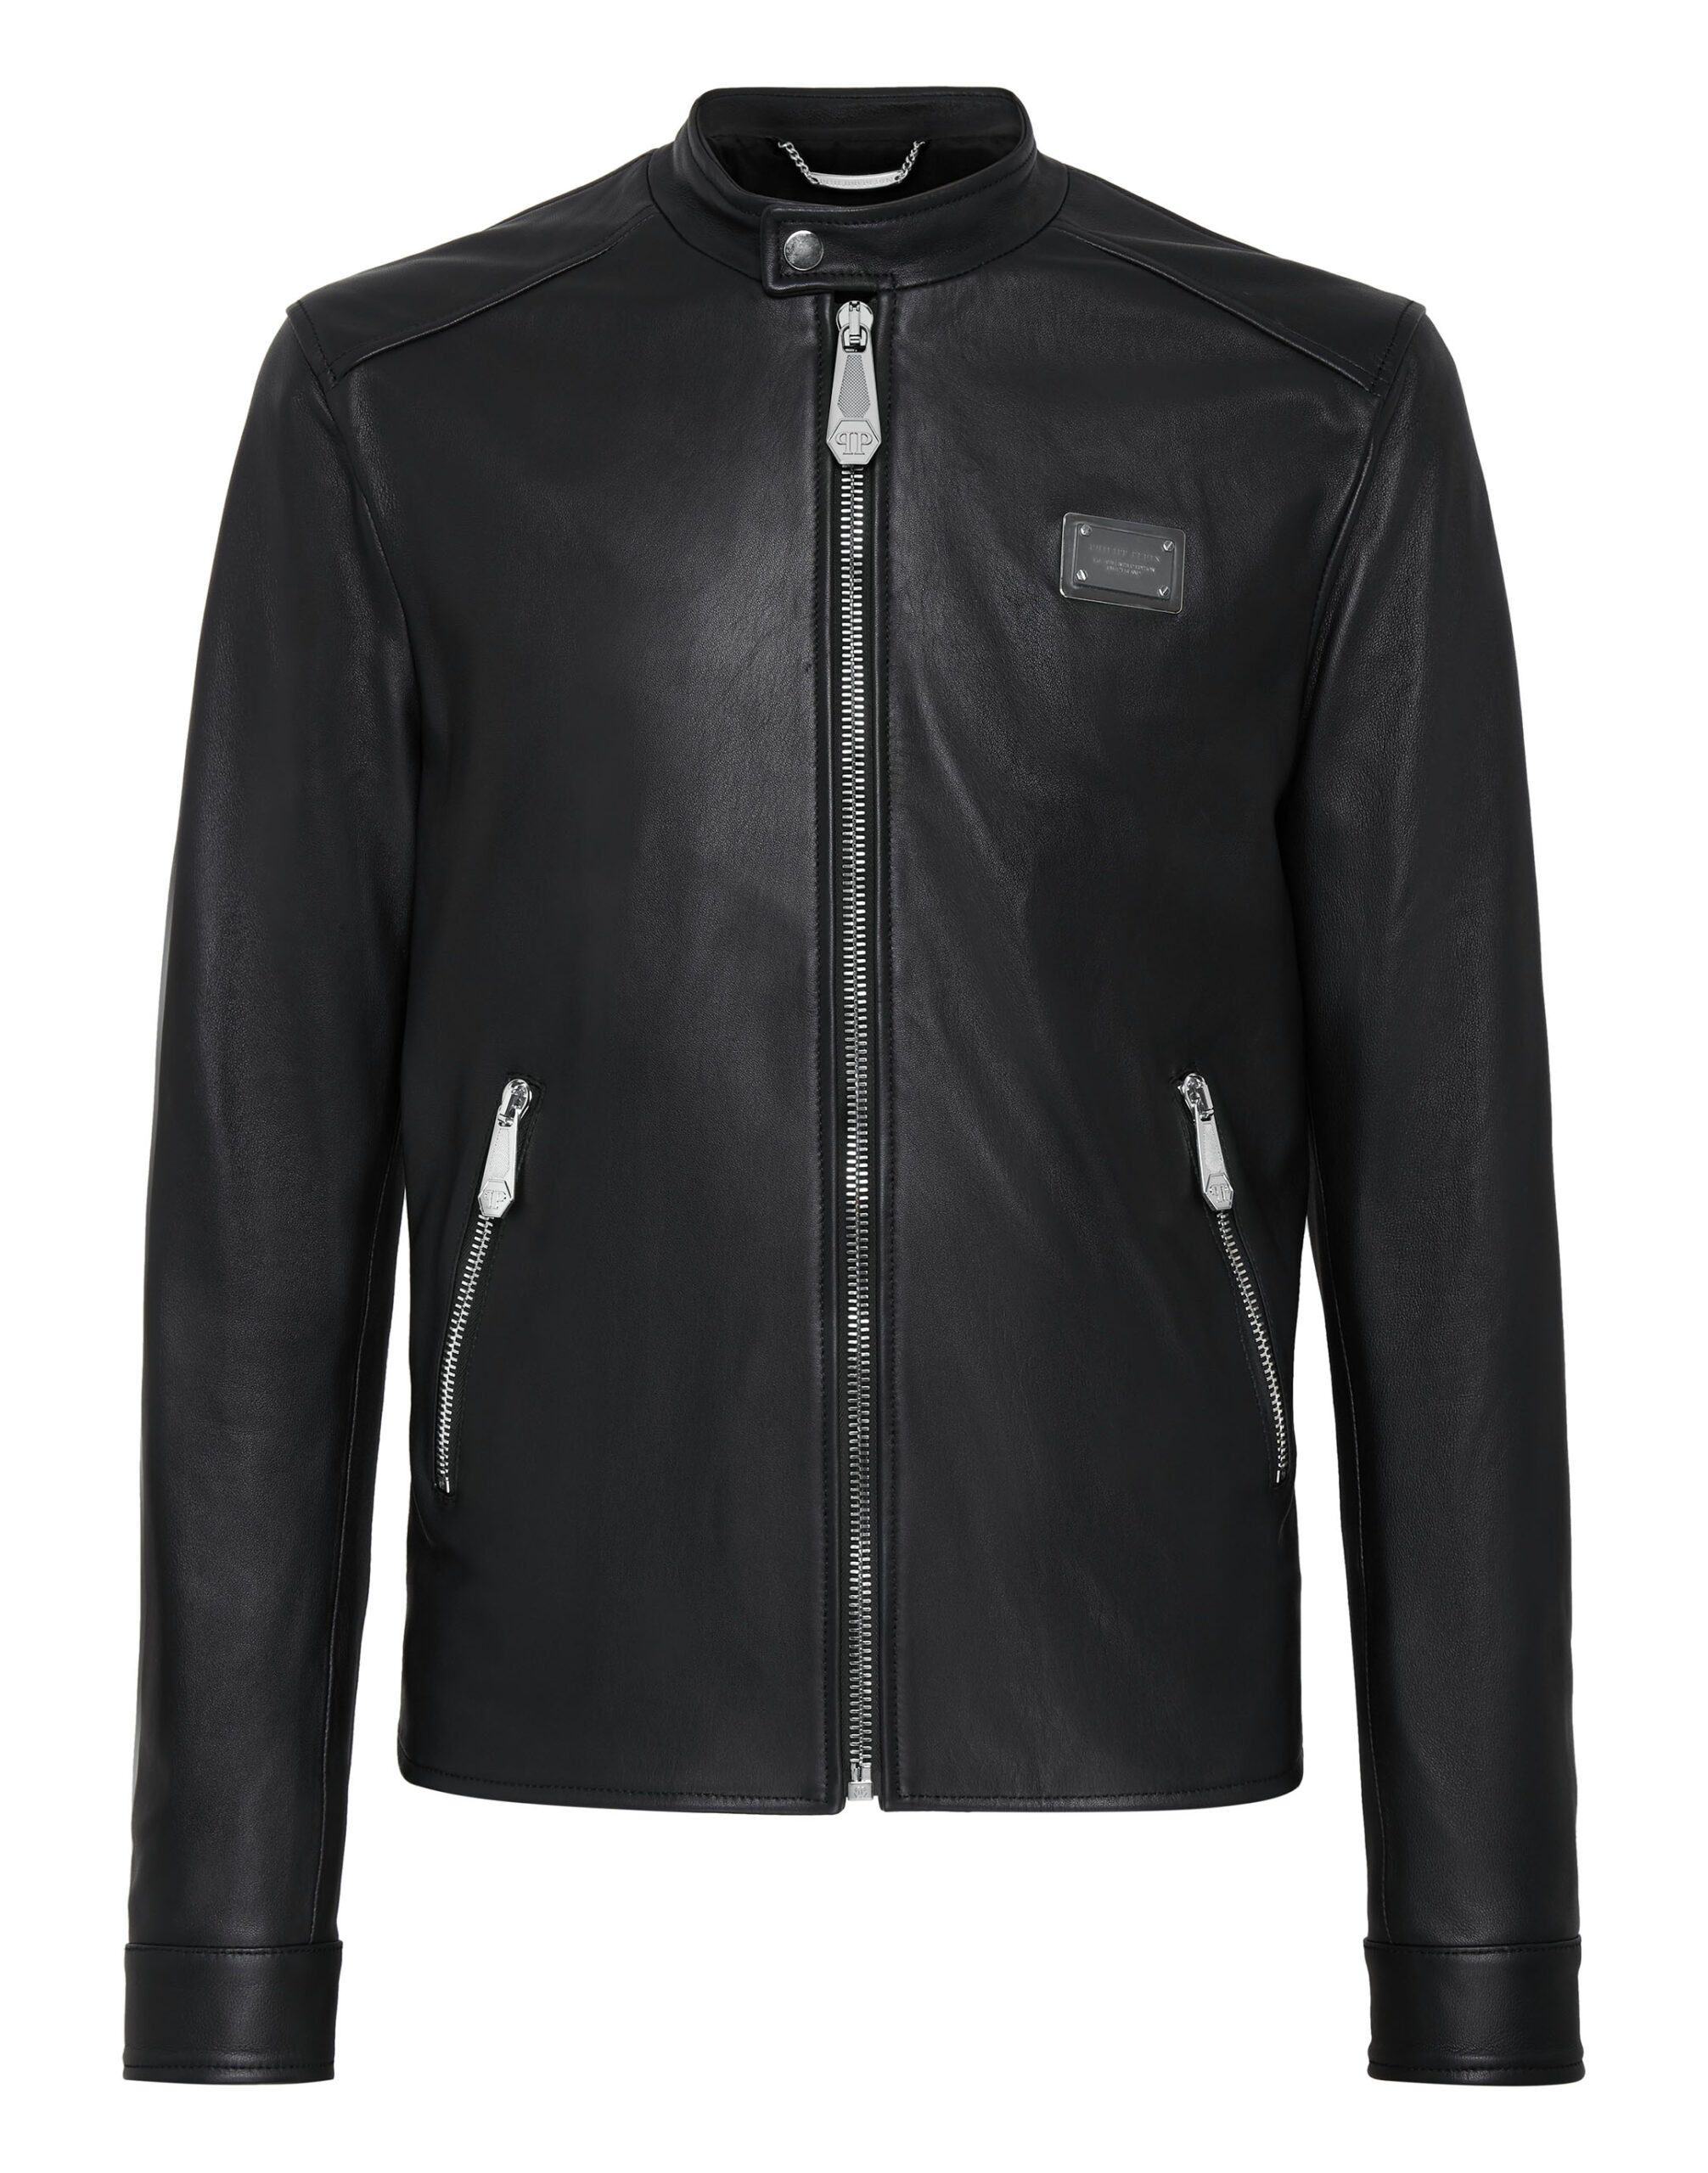 Philipp Plein Leather Jacket - Leather Guys: Luxury Leather Jackets